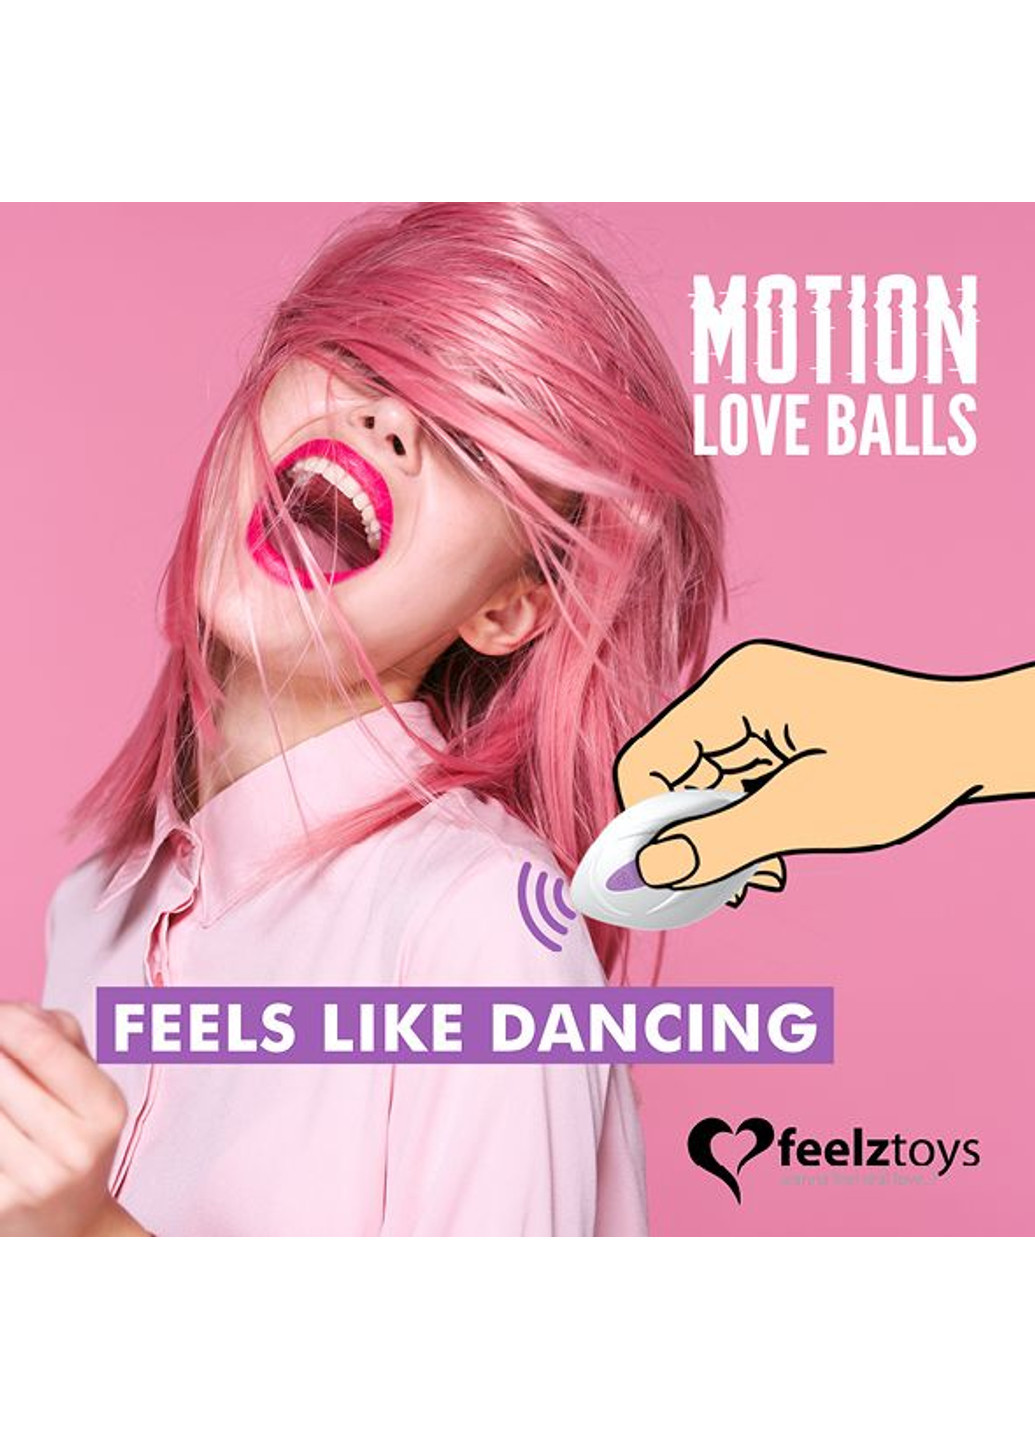 Вагинальные шарики с массажем и вибрацией Motion Love Balls Twisty FeelzToys (251903321)